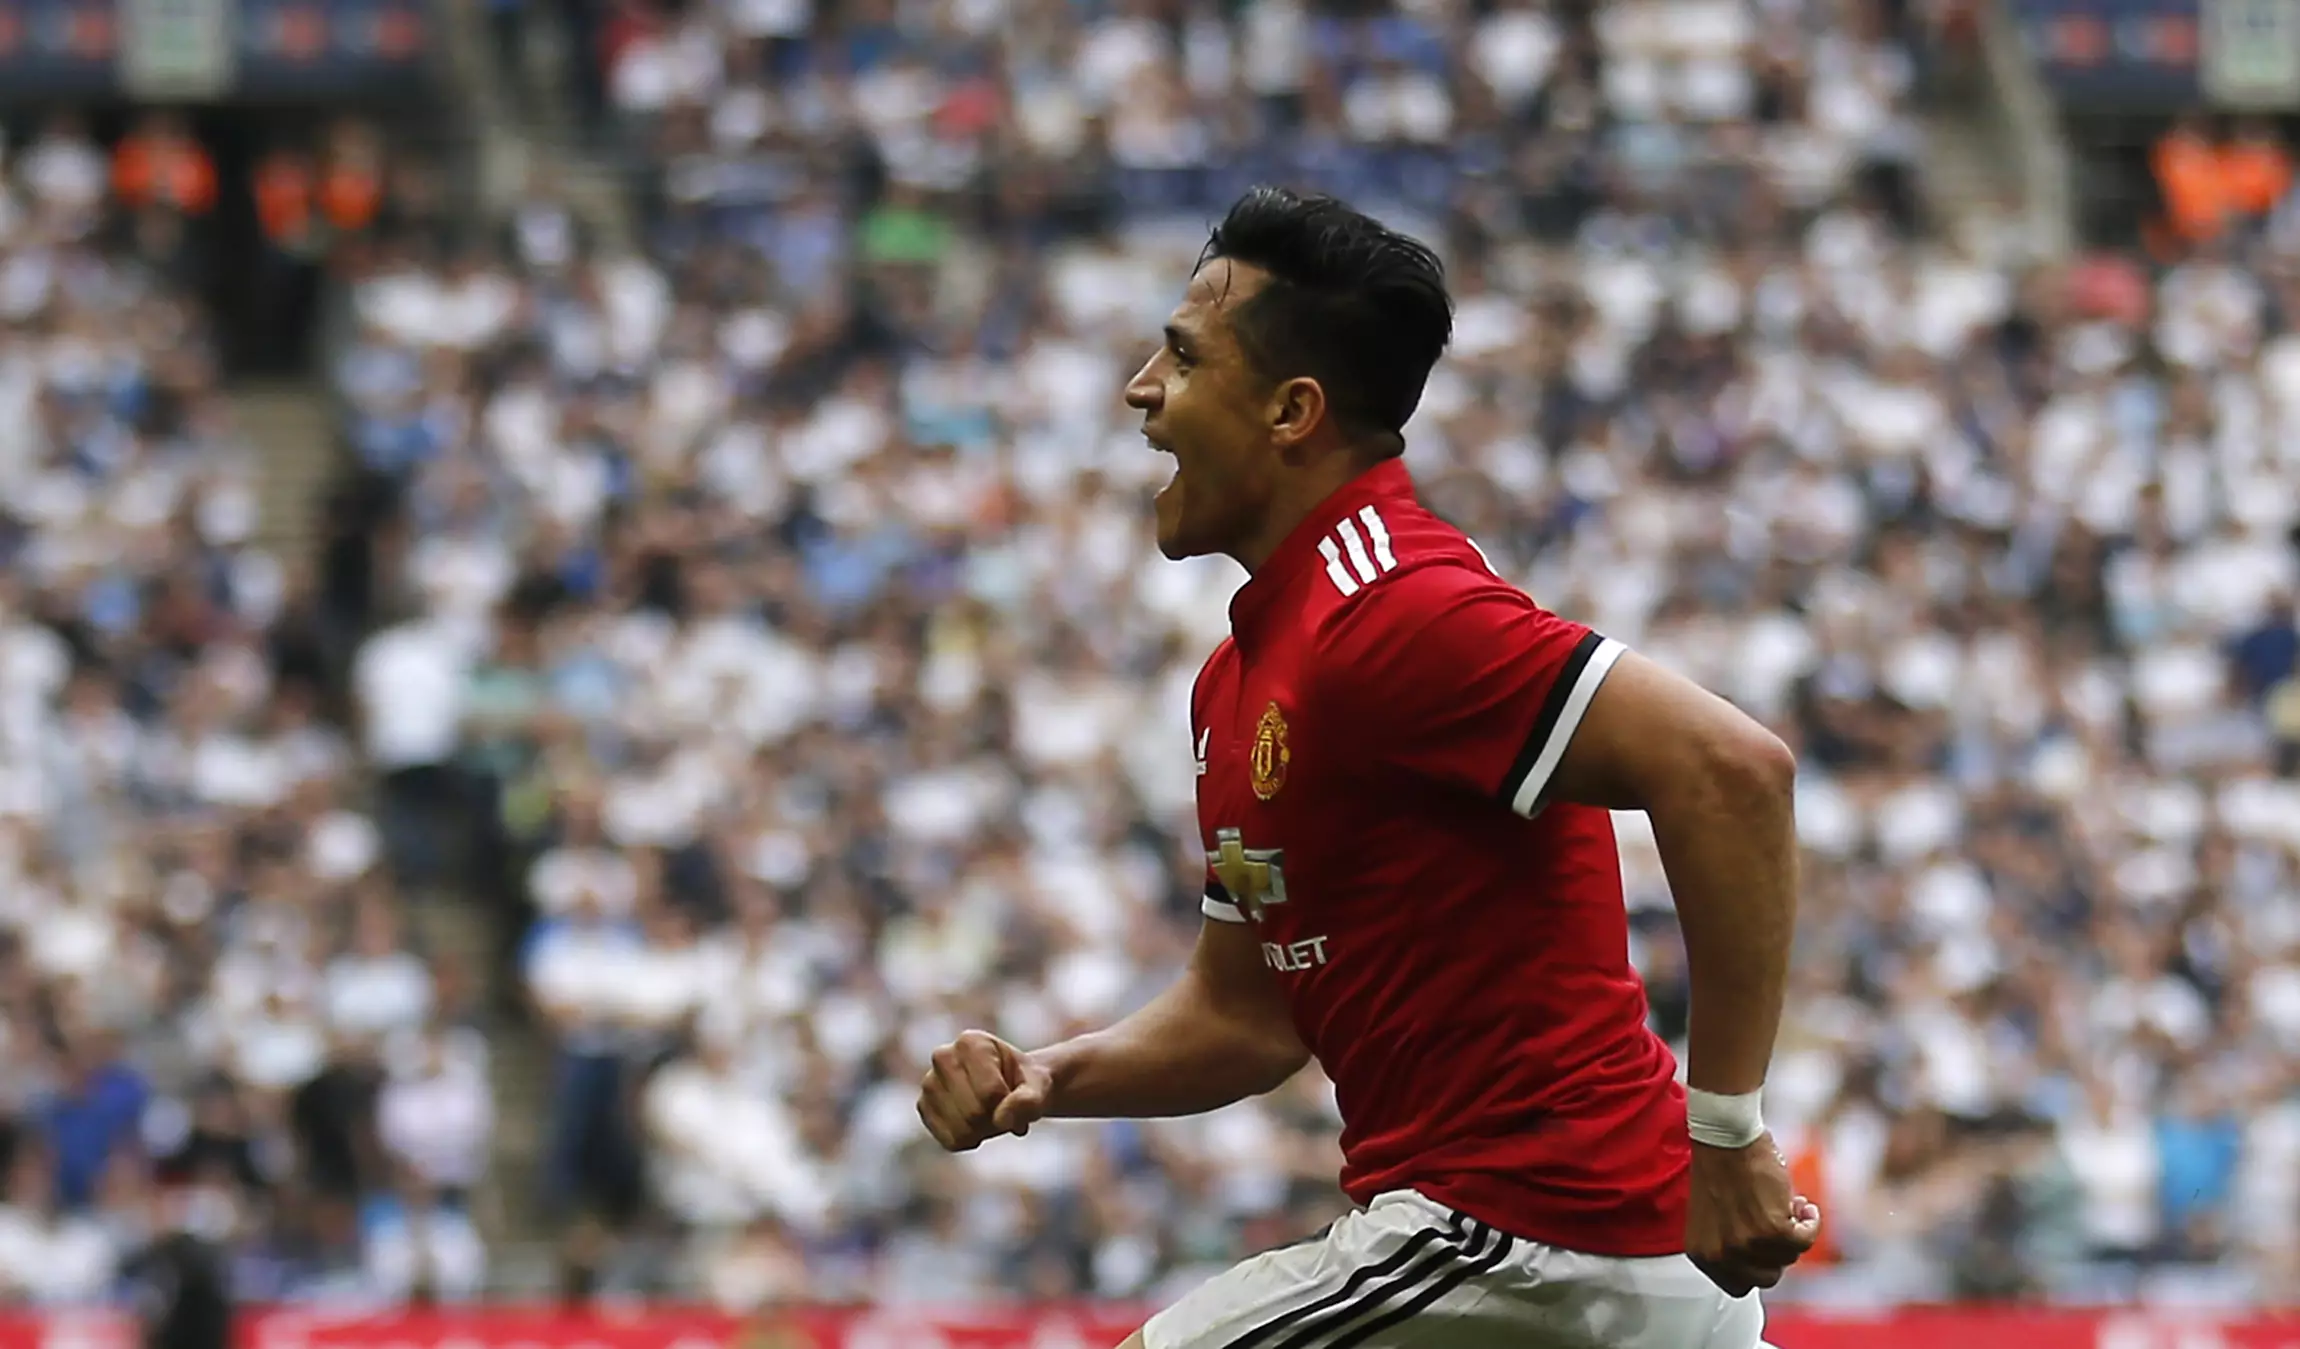 Sanchez celebrates scoring for United. Image: PA